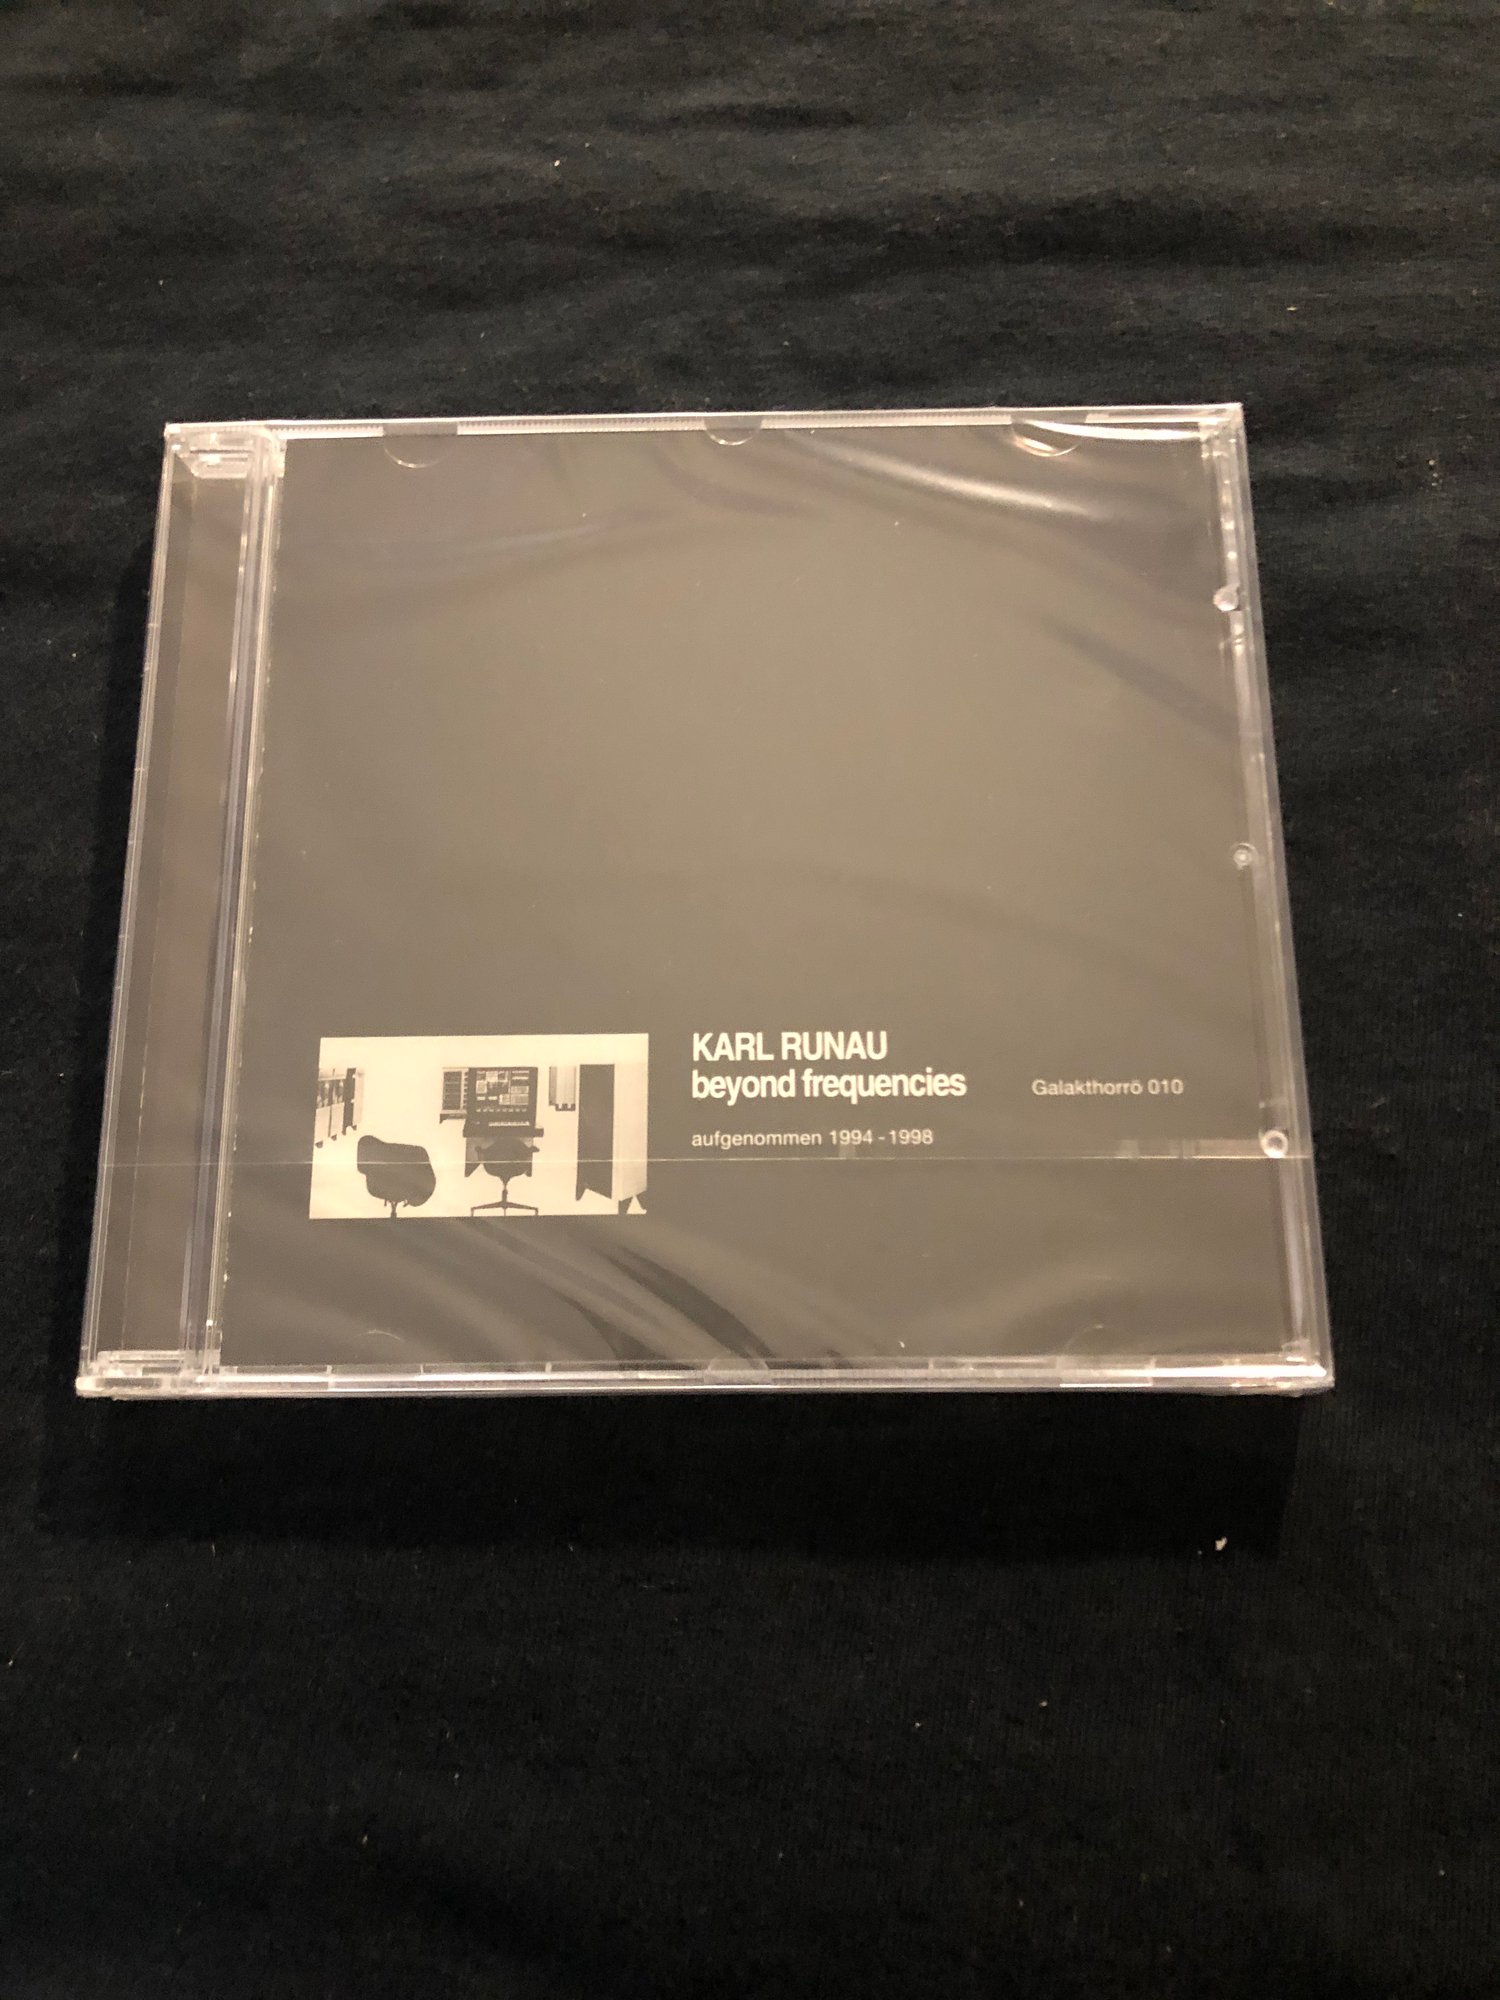 KARL RUNAU - BEYOND FREQUENCIES CD (Galakthorro)